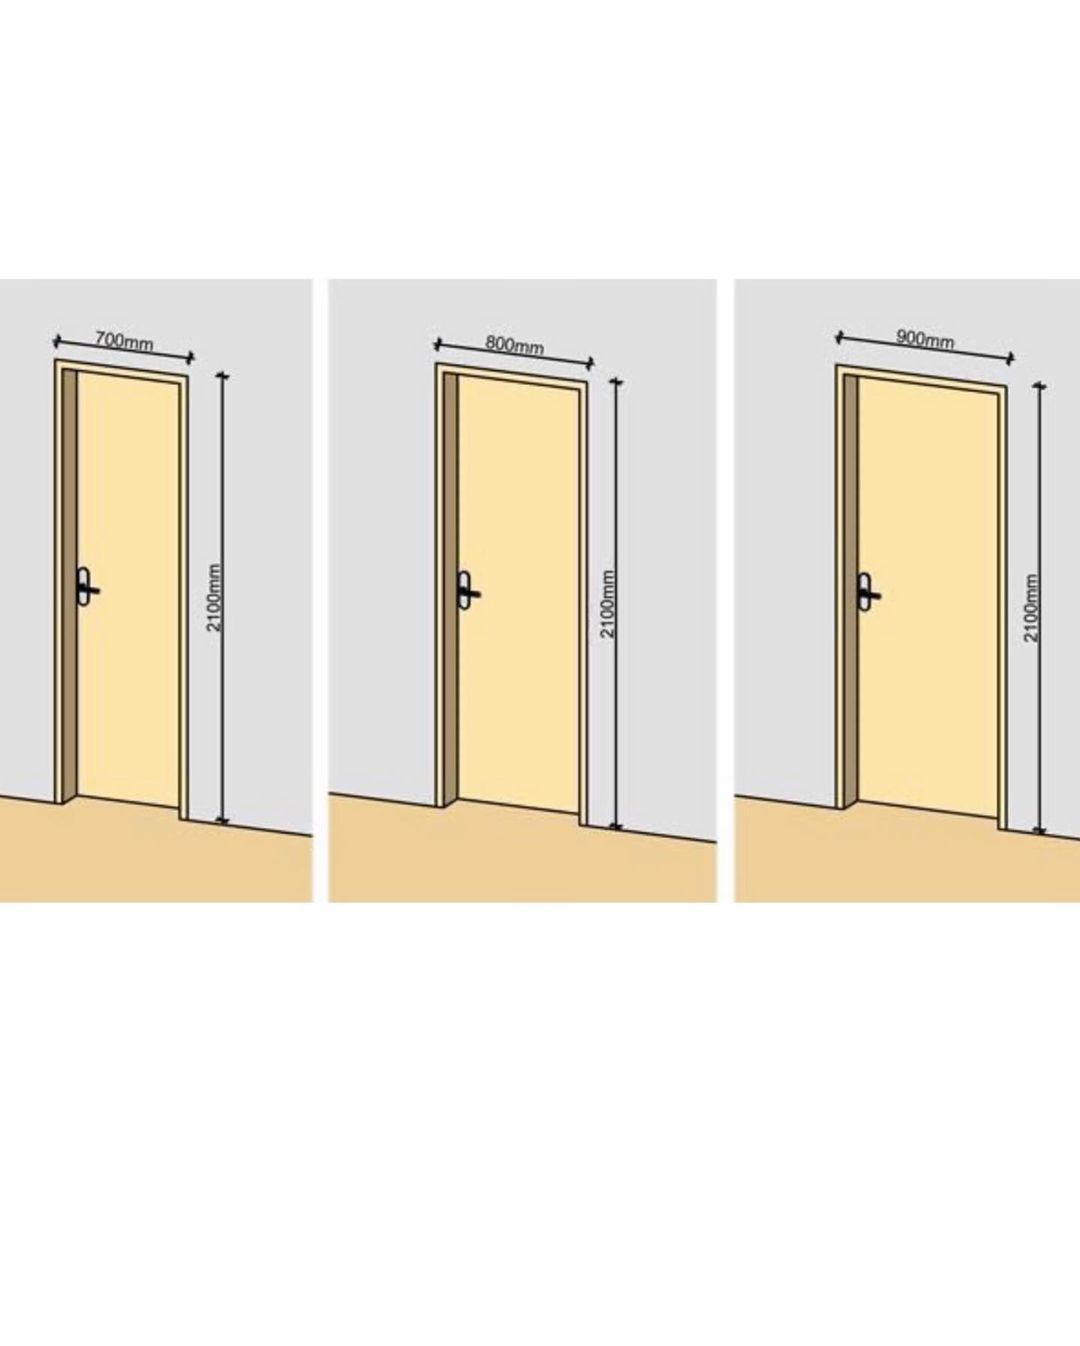 Стандарт двери ванная. Высота проема межкомнатной двери стандарт. Стандартный размер полотна межкомнатной двери. Ширина дверного проема межкомнатной двери стандарт. Высота дверного проема межкомнатной двери стандарт.